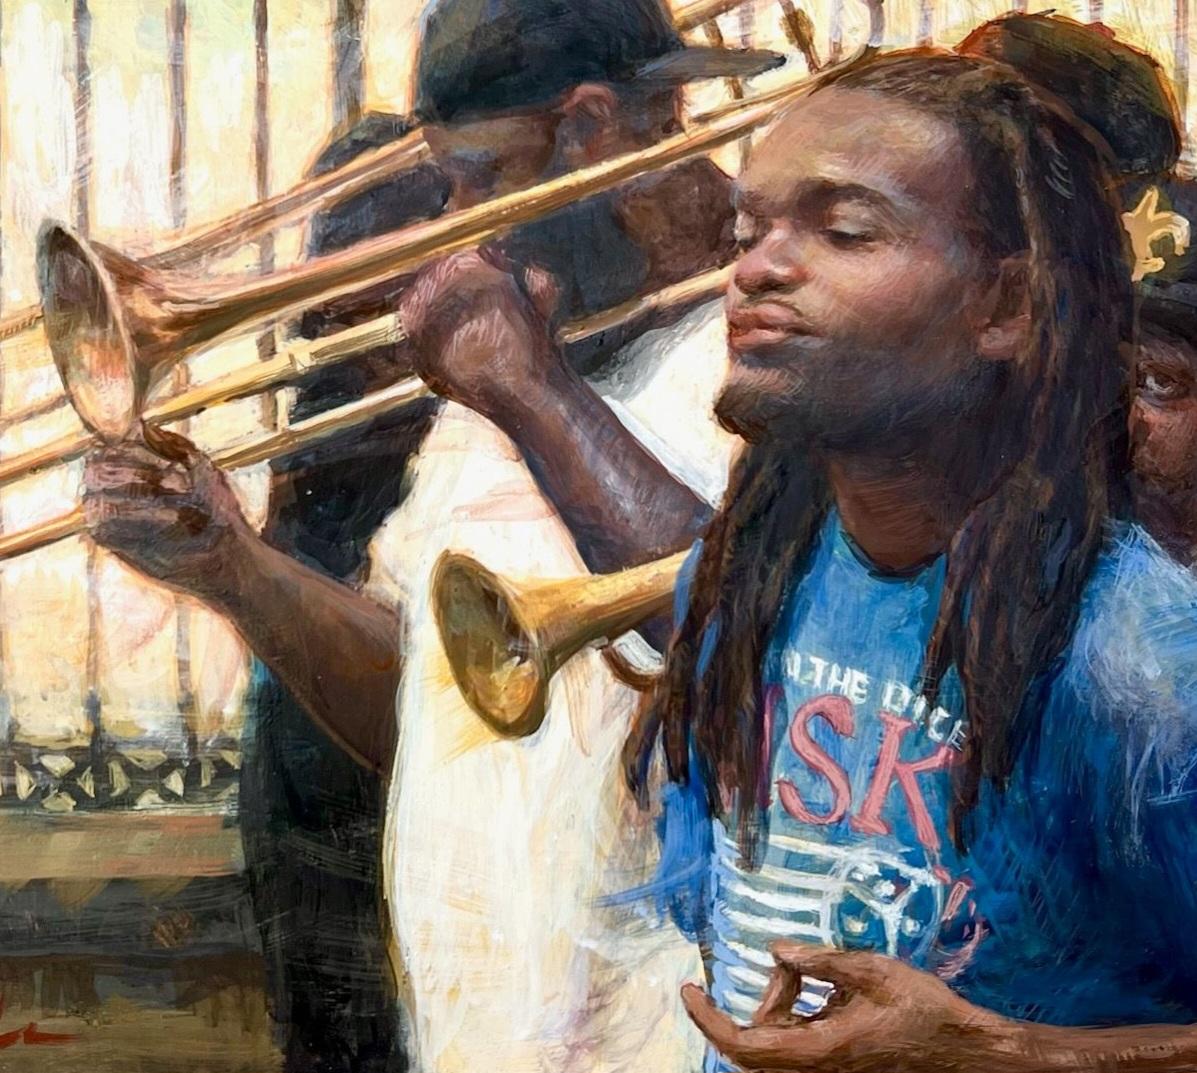 En se promenant sur Jackson Square à la Nouvelle-Orléans, on ne peut s'empêcher d'entendre les trompettes et les trombones de l'orchestre de Jackson Street qui passe son temps à divertir les touristes et les habitants de la ville. En s'installant